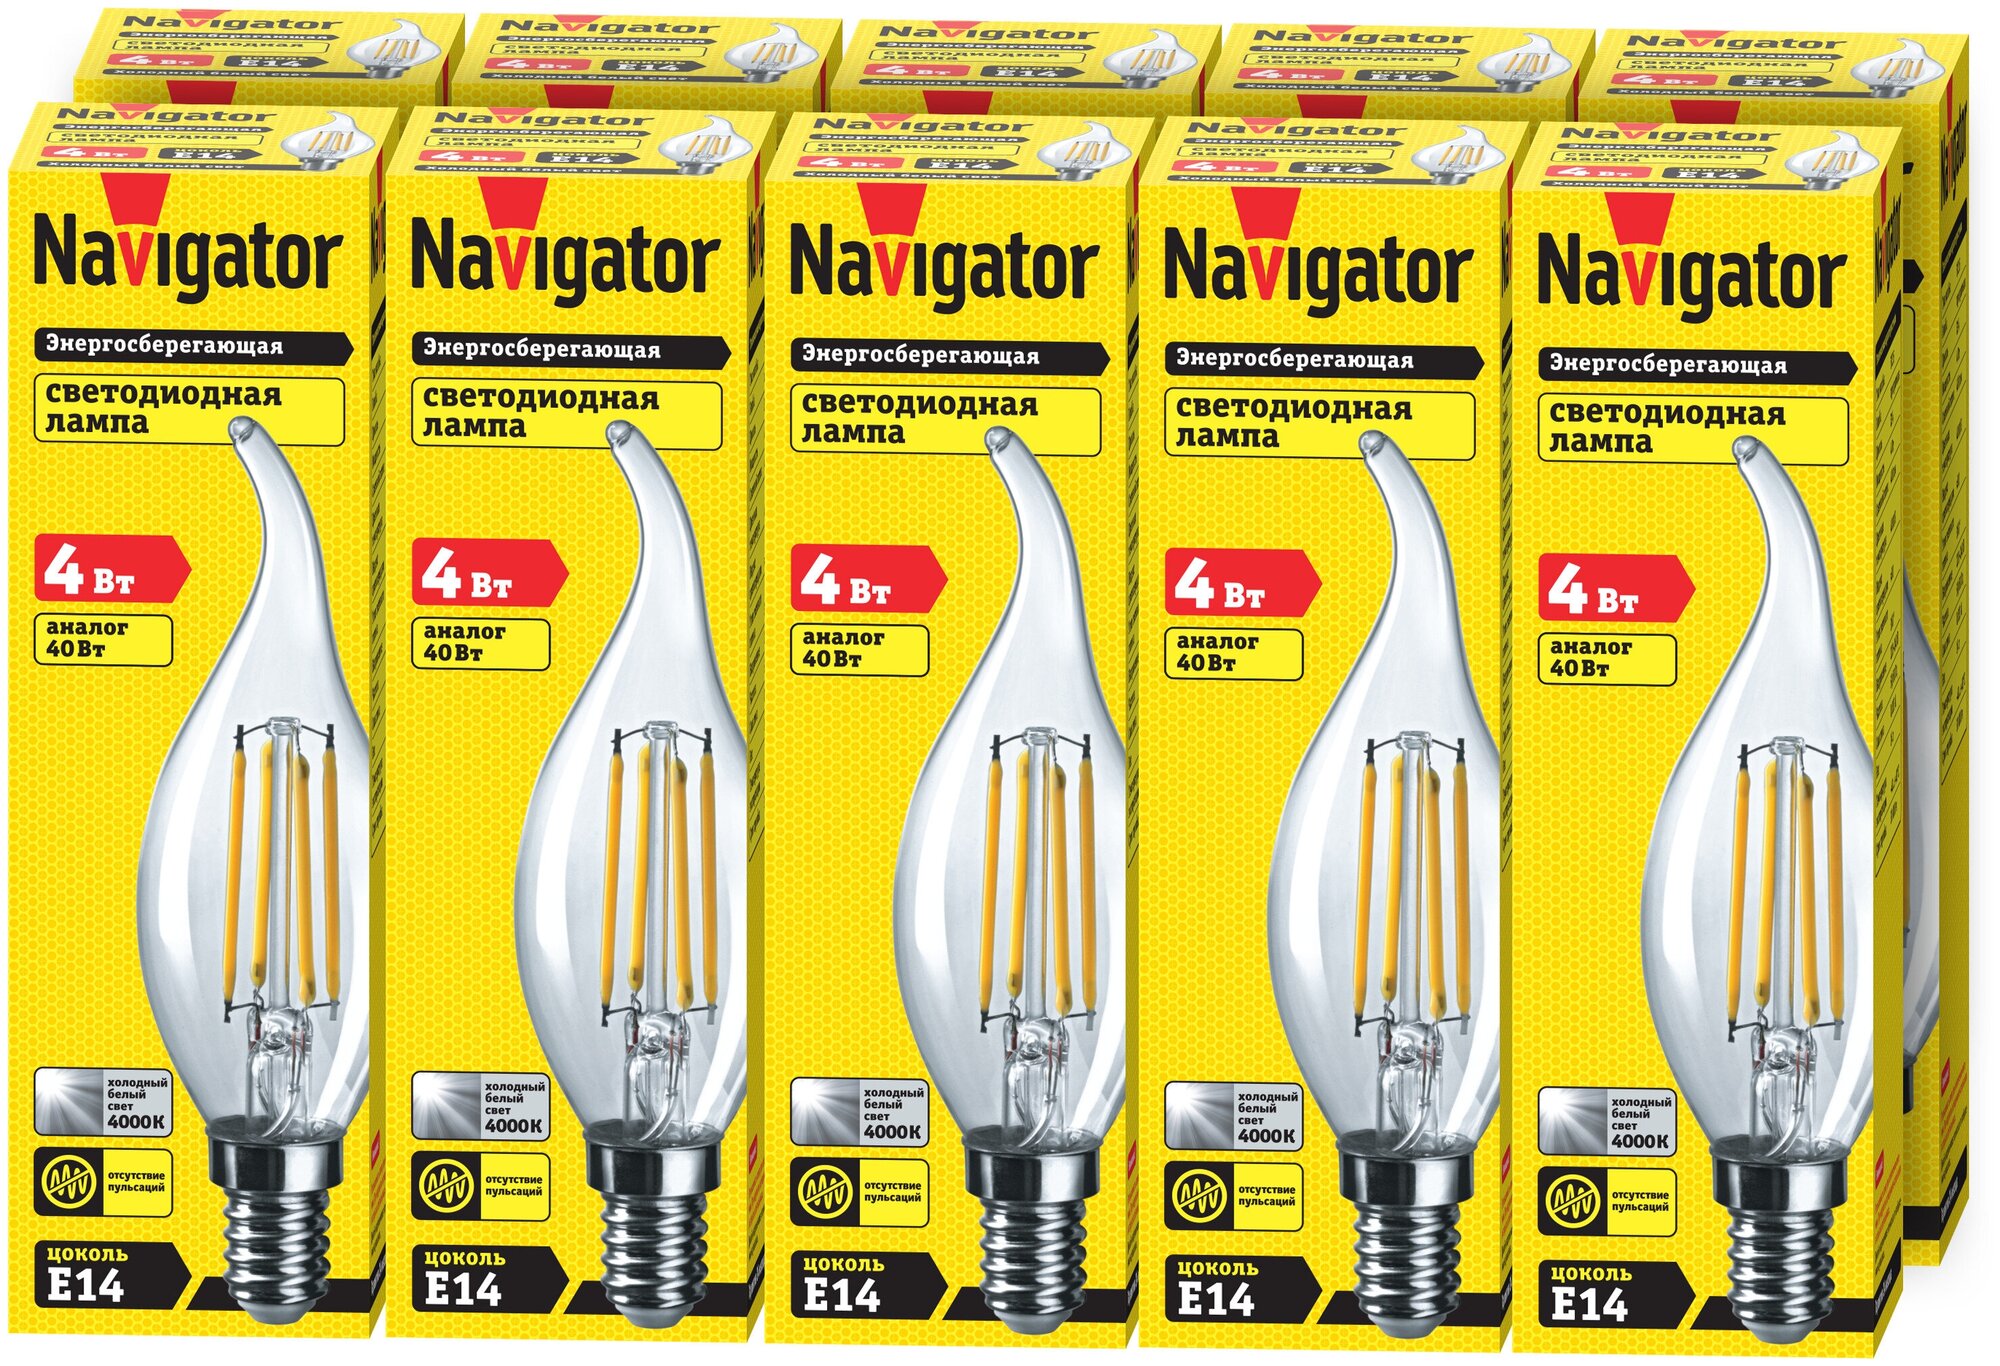 Лампа светодиодная Navigator 61 341, 4 Вт, свеча на ветру Е14, дневной свет 4000К, упаковка 10 шт.